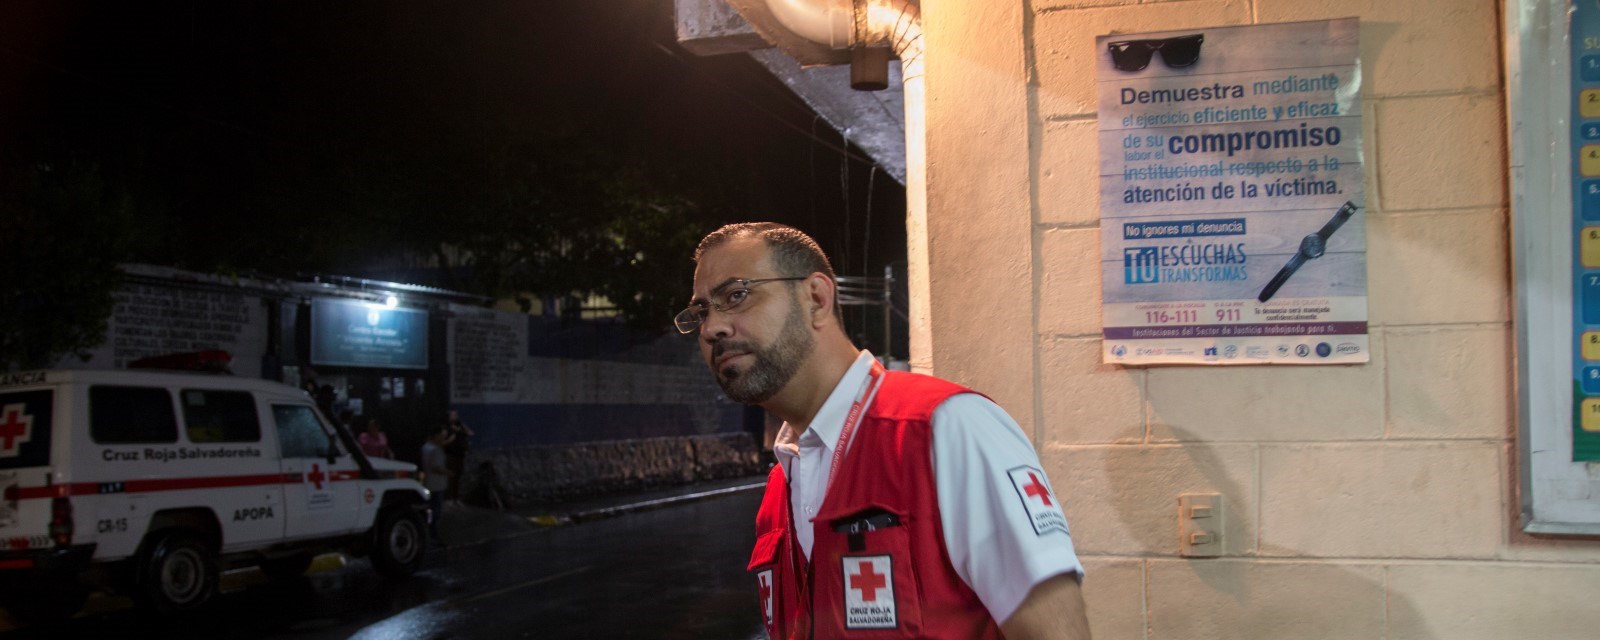 Dr. Romeo Paredes, leder health Care in Danger prosjeketet i El Salvador Røde Kors. Røde Kors helseklinikk i Apopo utenfor San Salvador. Her får de ofte inn gjengmedlemmer med skuddskader. 